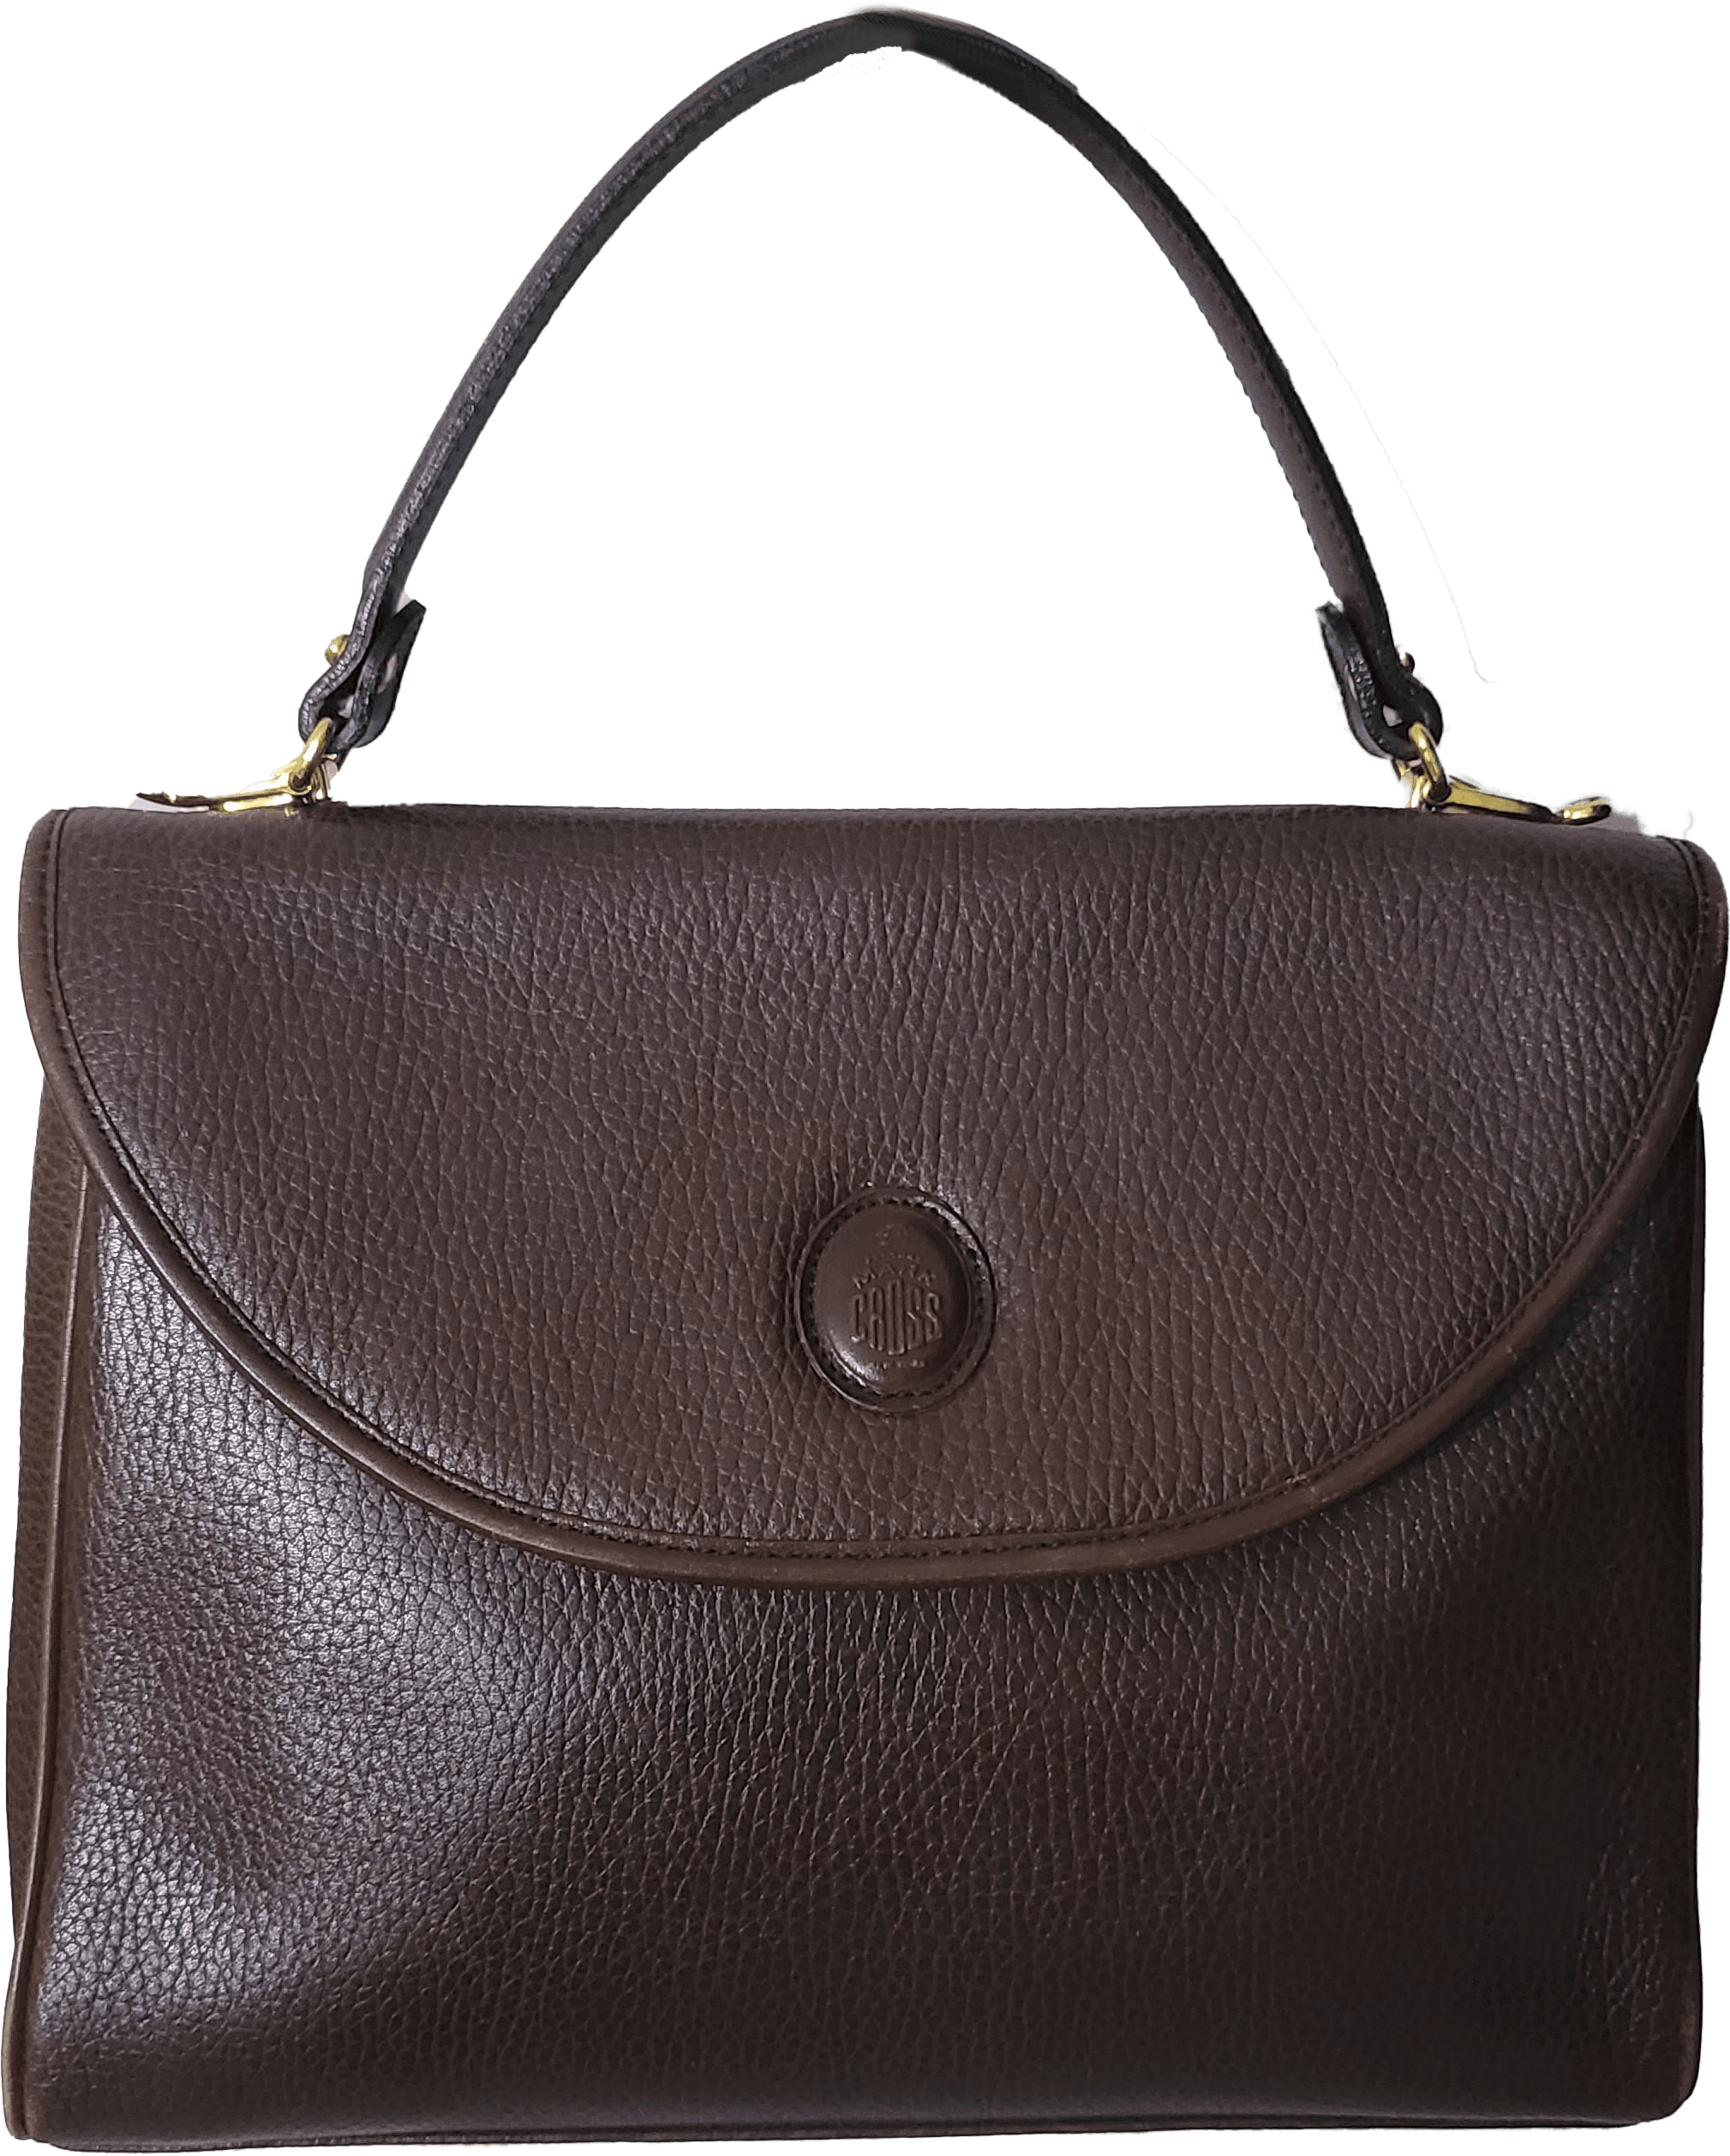 Vintage 80’s Leather Handbags